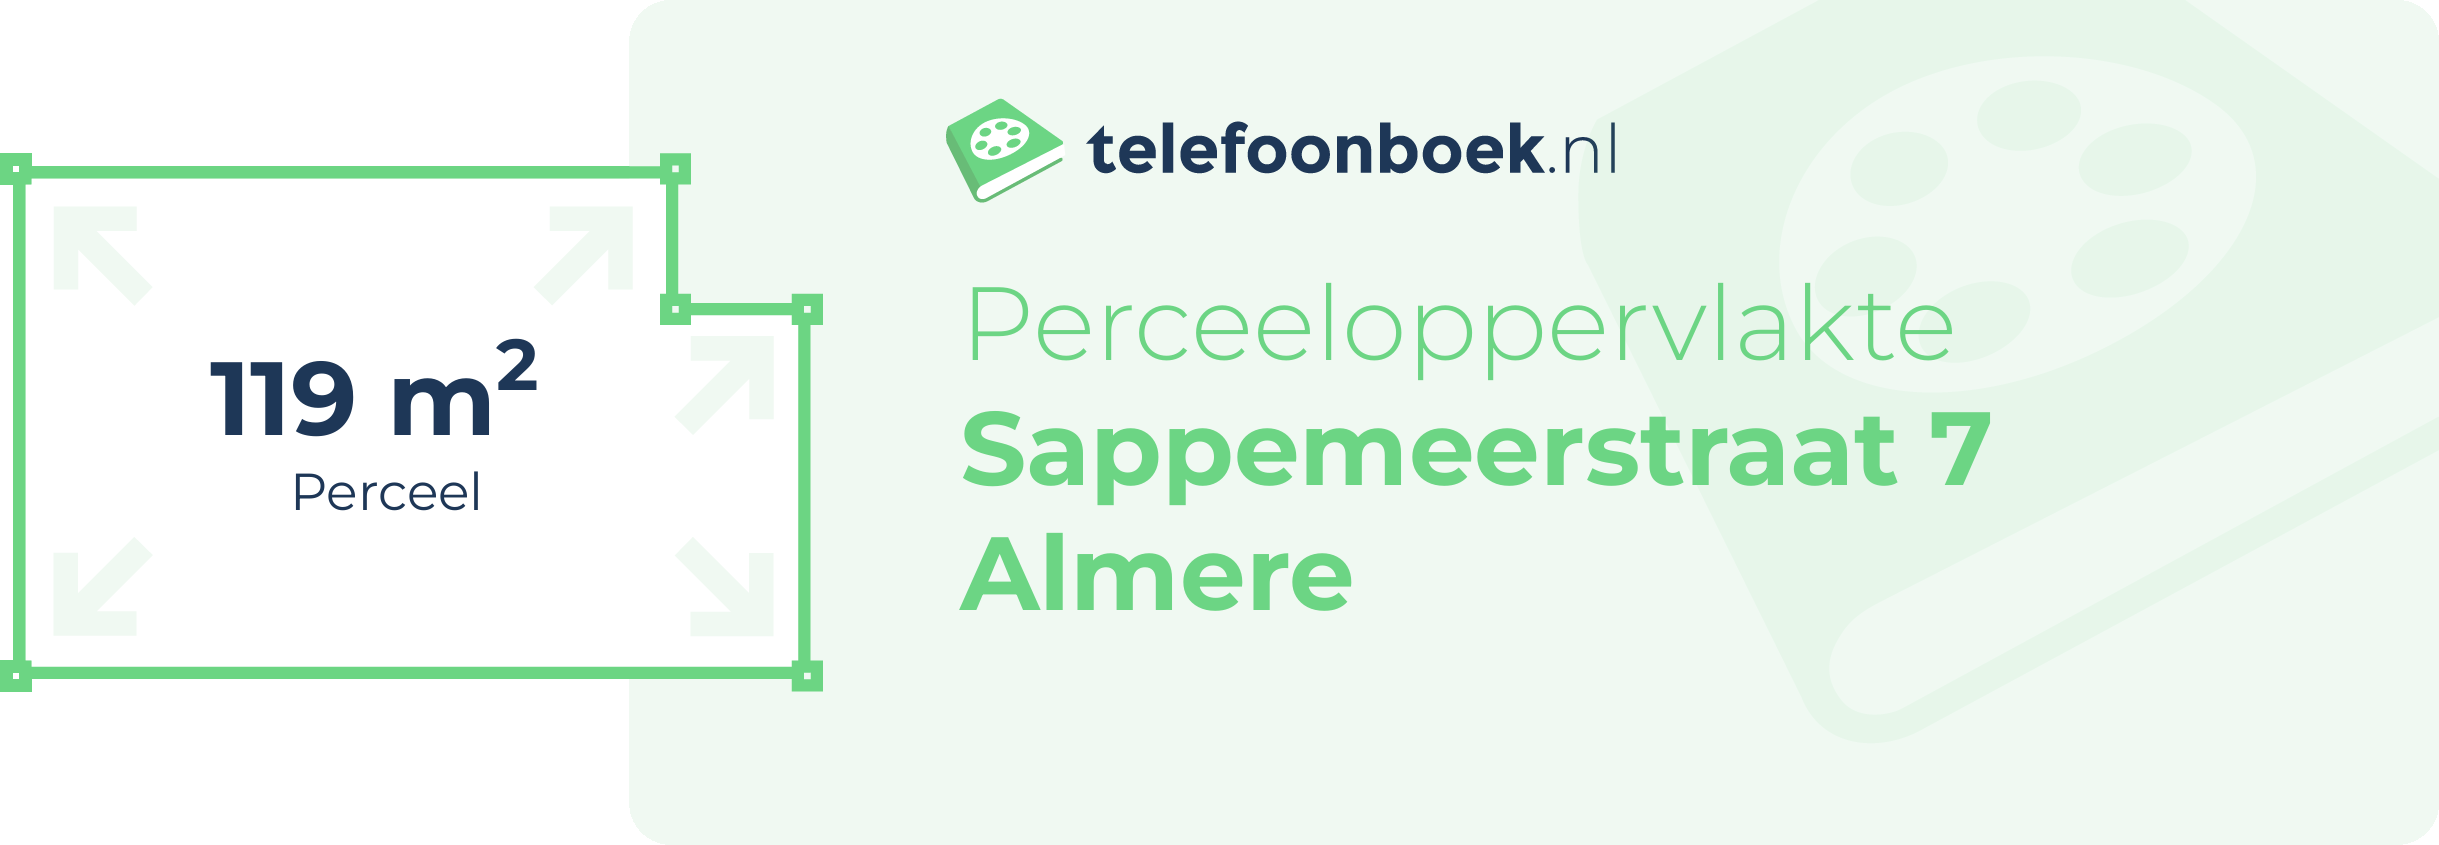 Perceeloppervlakte Sappemeerstraat 7 Almere